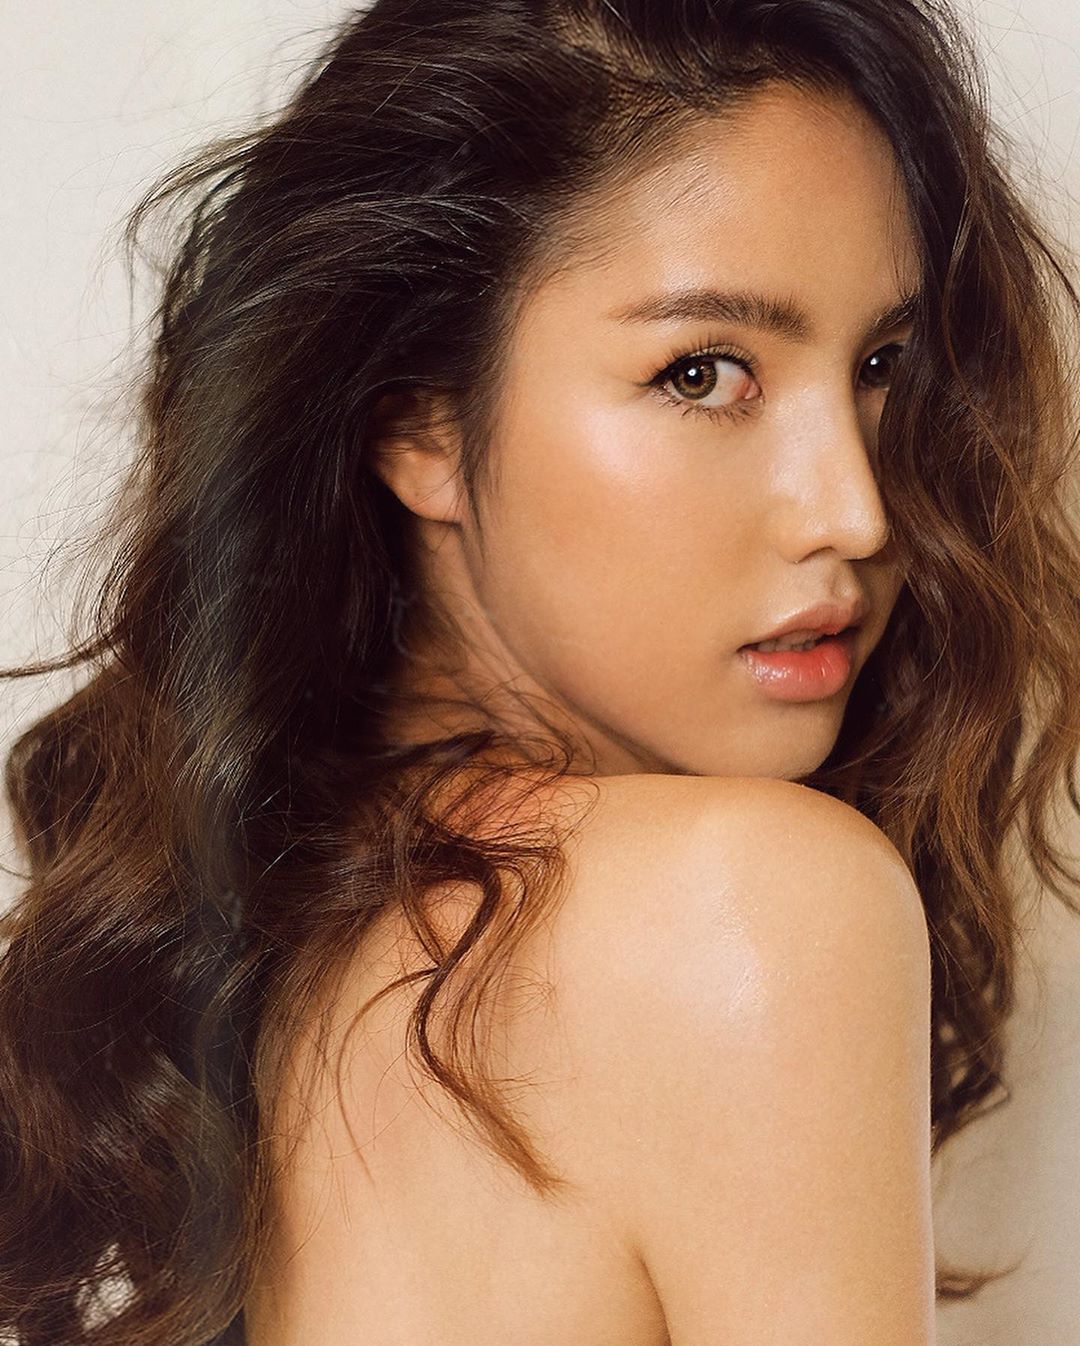 Pattaranan Inprasert – Most Beautiful Transgender Thailand Model Instagram